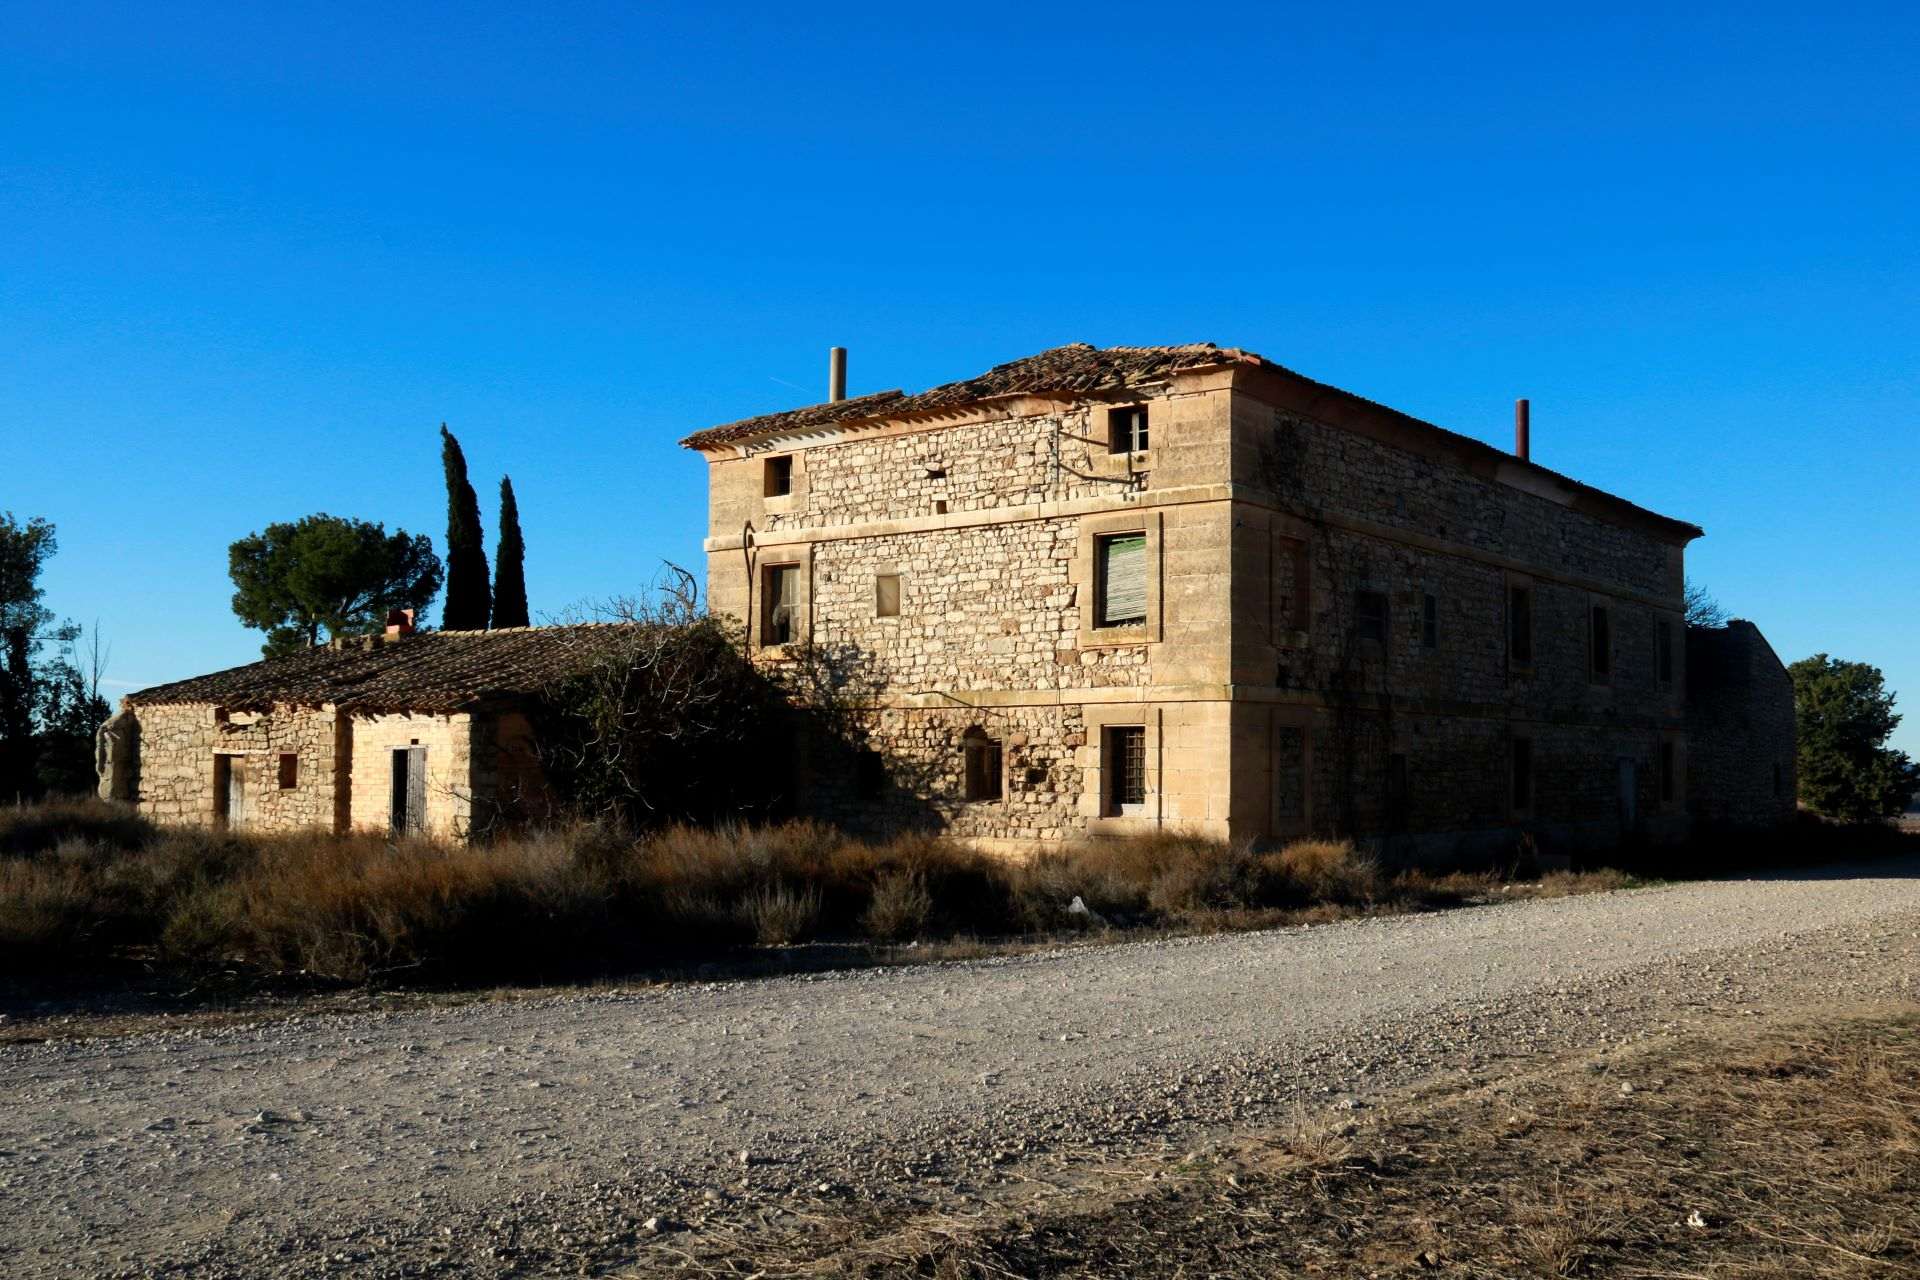 El Govern y la Diputación de Lleida acuerdan restaurar la casa Vallmanya de Francesc Macià